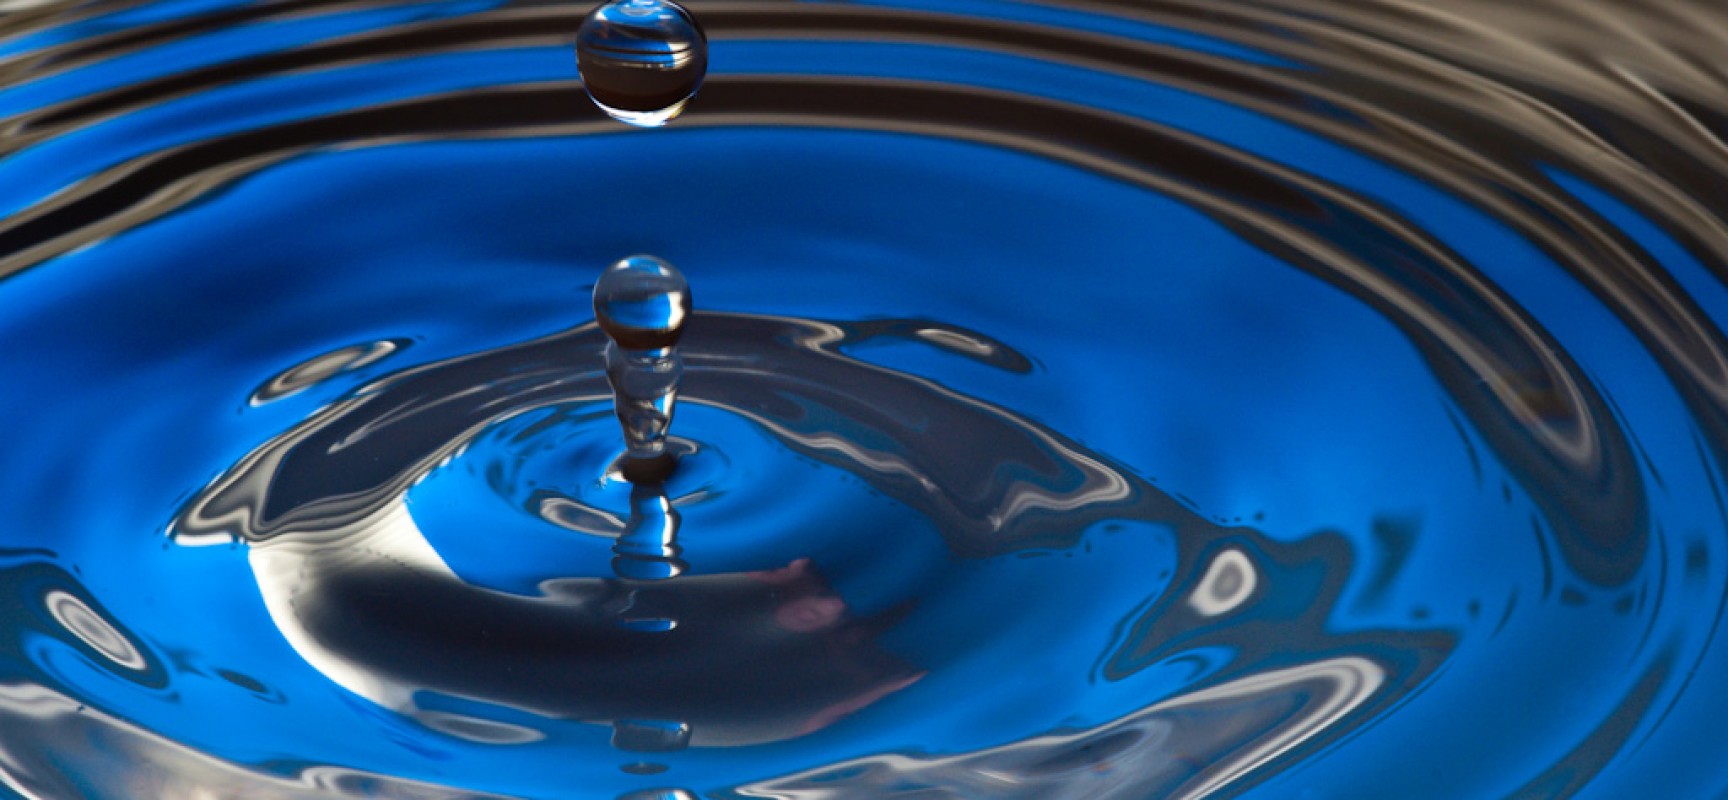 72 fábricas de Nestlé consiguen un nivel 0 de desperdicio de agua